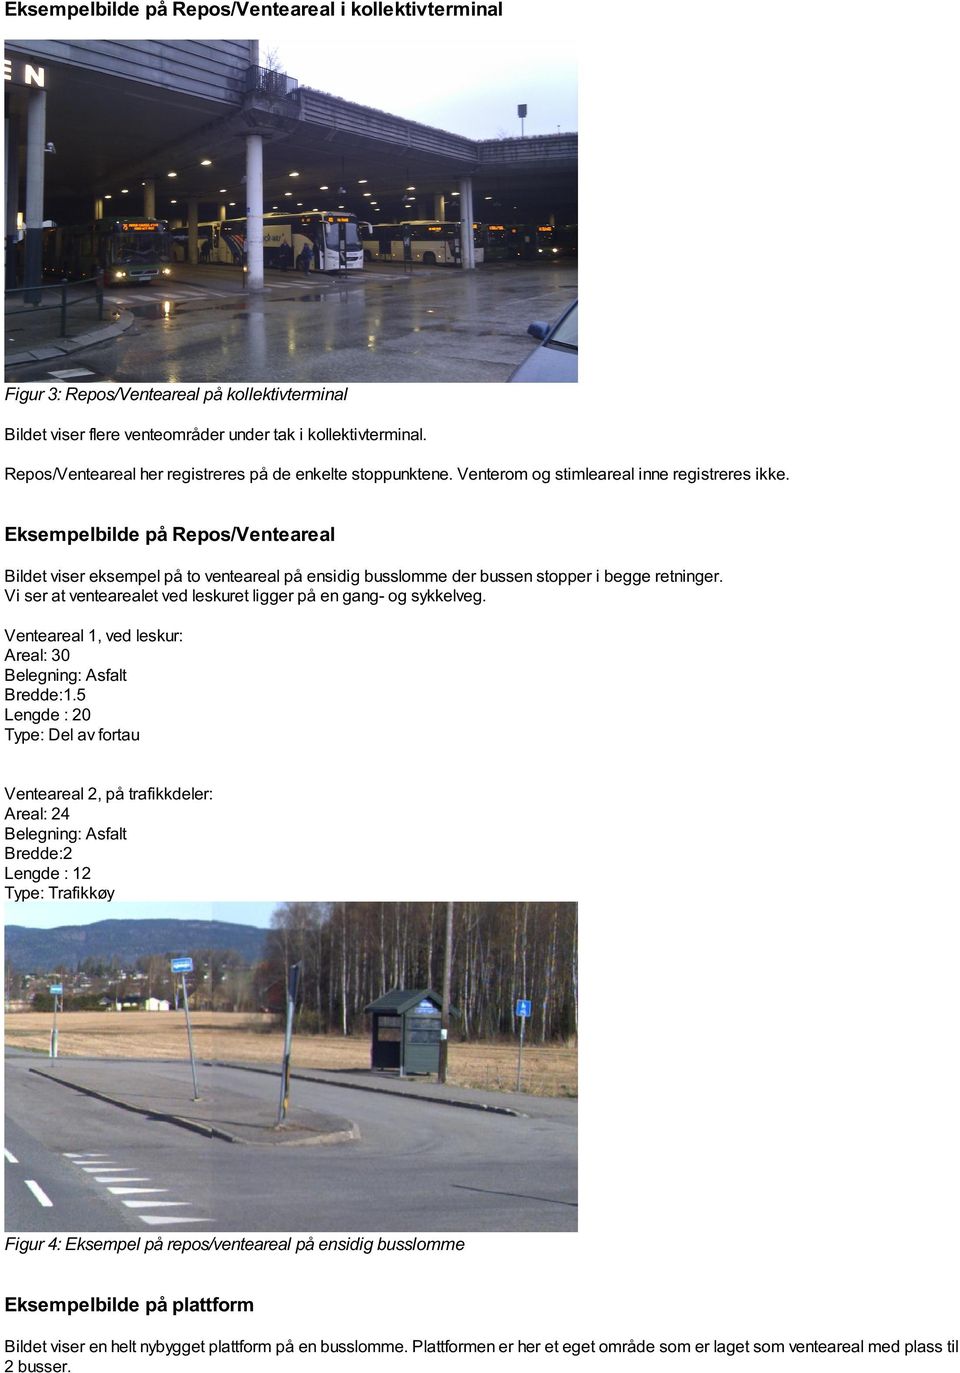 Eksempelbilde på Repos/Venteareal Bildet viser eksempel på to venteareal på ensidig busslomme der bussen stopper i begge retninger. Vi ser at ventearealet ved leskuret ligger på en gang- og sykkelveg.